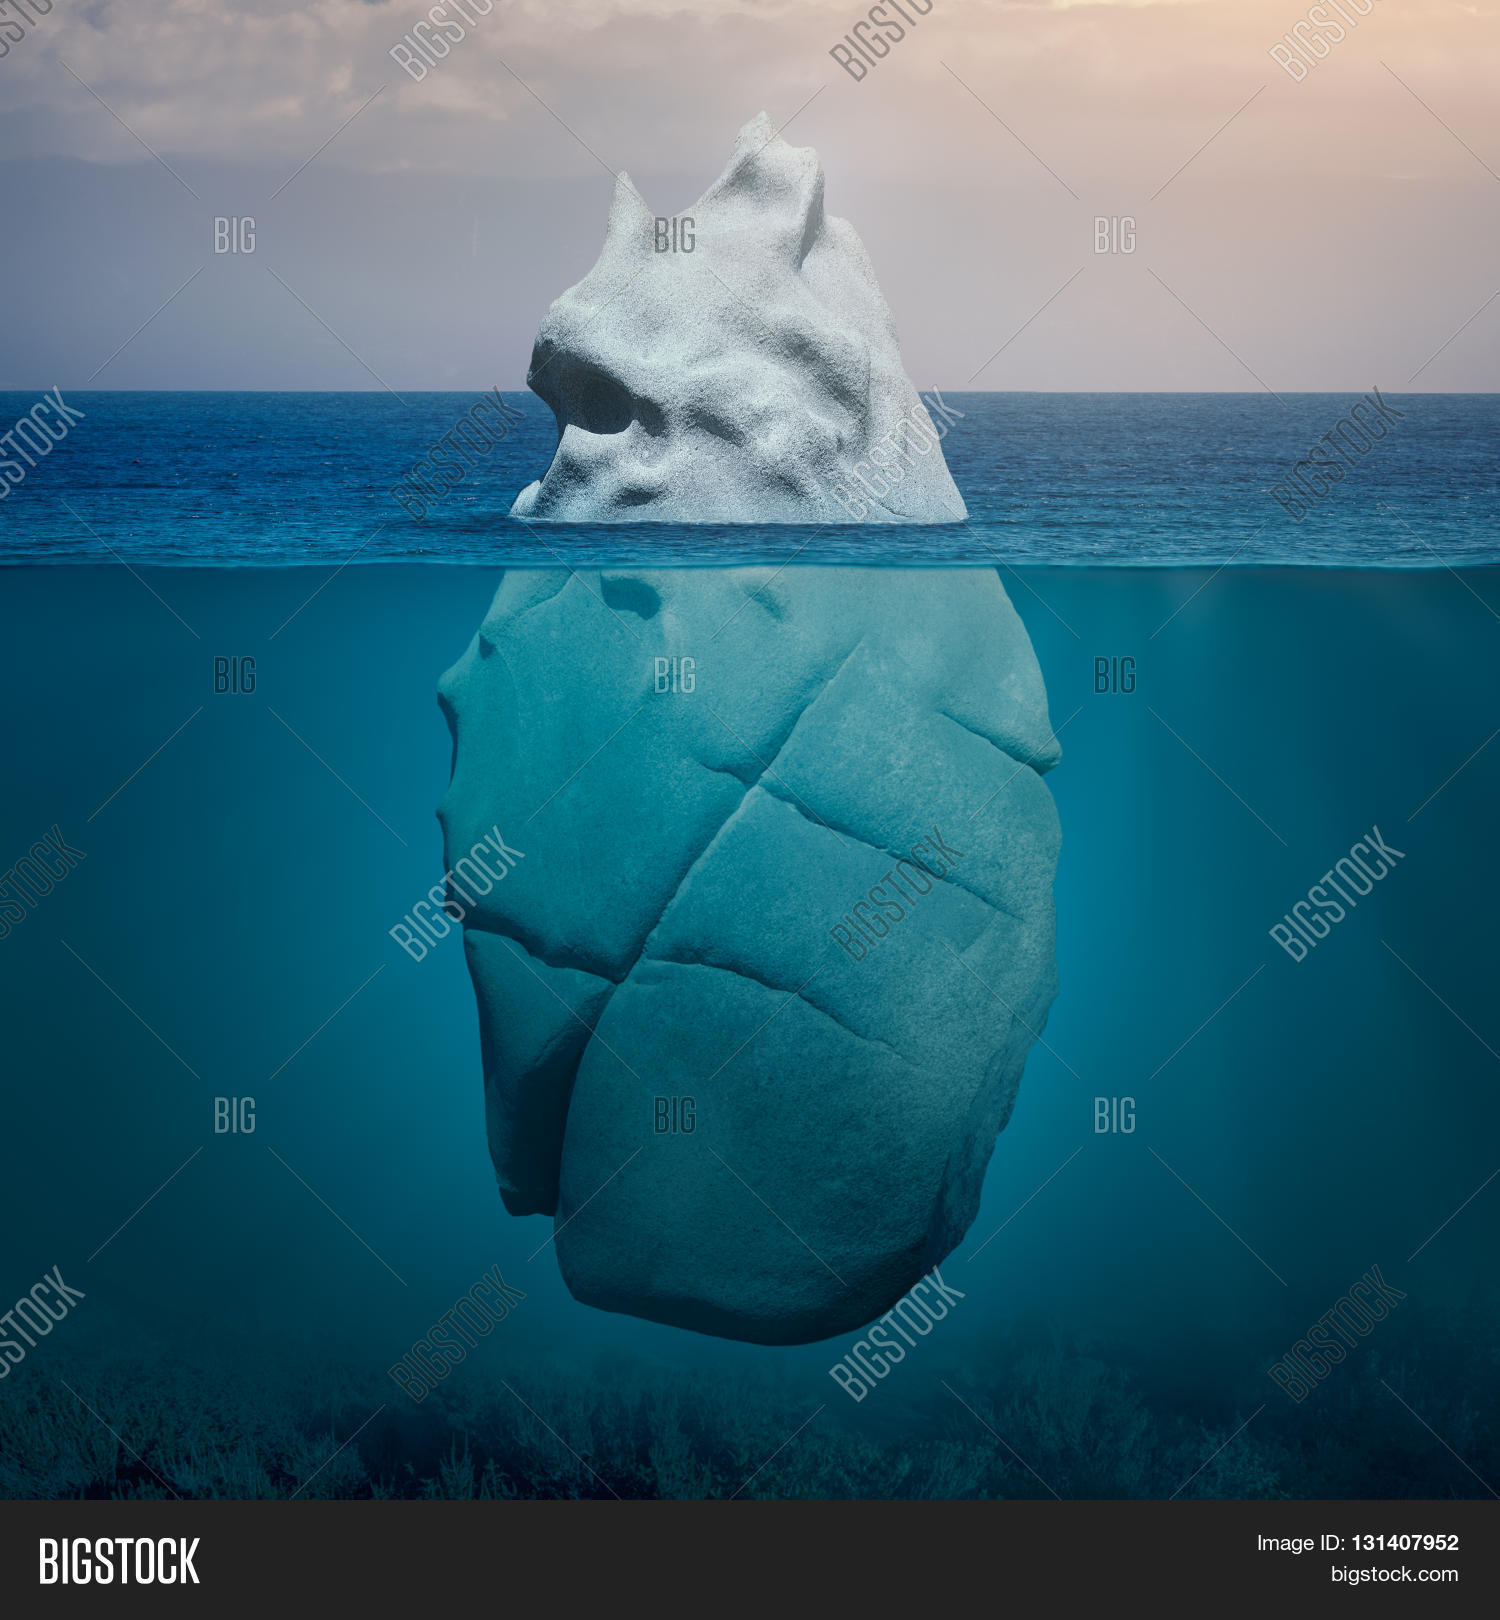 Big Rock Like Iceberg Floating Blue Image & Photo | Bigstock